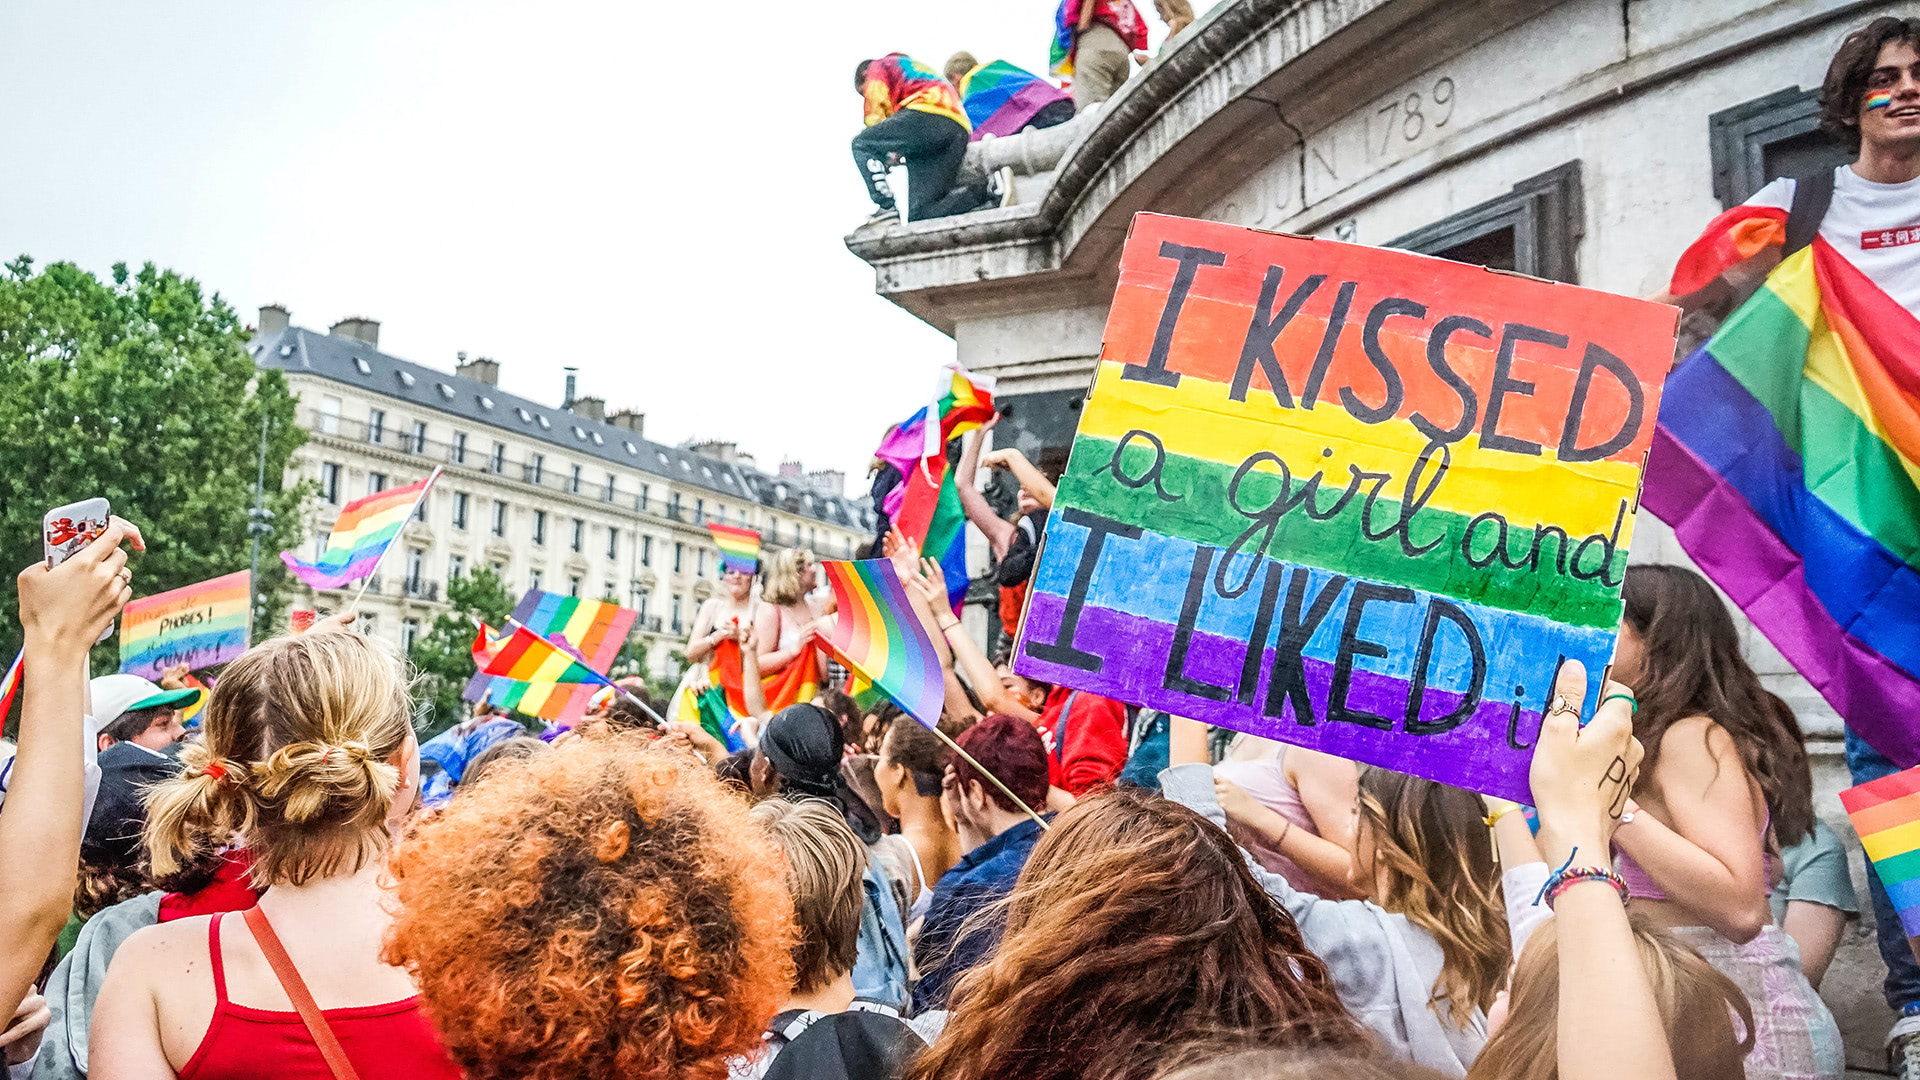 événement lesbien : marche des fiertés>
<h3>Événements importants pour la communauté LGBT en France</h3>
<p>La communauté lesbienne en France a connu plusieurs événements importants qui ont contribué à façonner les droits, la visibilité et la reconnaissance des personnes lesbiennes. Bien que la liste ne soit pas exhaustive, voici quelques événements clés :</p>
<p><strong> Dépénalisation de l’homosexualité (1982) :</strong> En 1982, la France a dépénalisé l’homosexualité, marquant un tournant crucial pour la communauté LGBTQ+ en général, y compris les lesbiennes.</p>
<p><strong> PACS (Pacte civil de solidarité) (1999) :</strong> L’introduction du PACS en 1999 a permis aux couples de même sexe, y compris les lesbiennes, de formaliser leur union civile, bien que cela ne soit pas équivalent au mariage.</p>
<p><strong> Mariage pour tous (2013) :</strong> L’adoption de la loi du mariage pour tous en 2013 a été une étape historique, permettant aux couples de même sexe, dont les lesbiennes, de se marier légalement en France.</p>
<p><strong> Marche des Fiertés LGBT (annuelle) :</strong> Les Marches des Fiertés LGBT, également connues sous le nom de Gay Pride, se tiennent chaque année dans plusieurs villes de France, offrant un espace de célébration, de revendication et de visibilité pour la communauté lesbienne.</p>
<p>Photo de <a href=